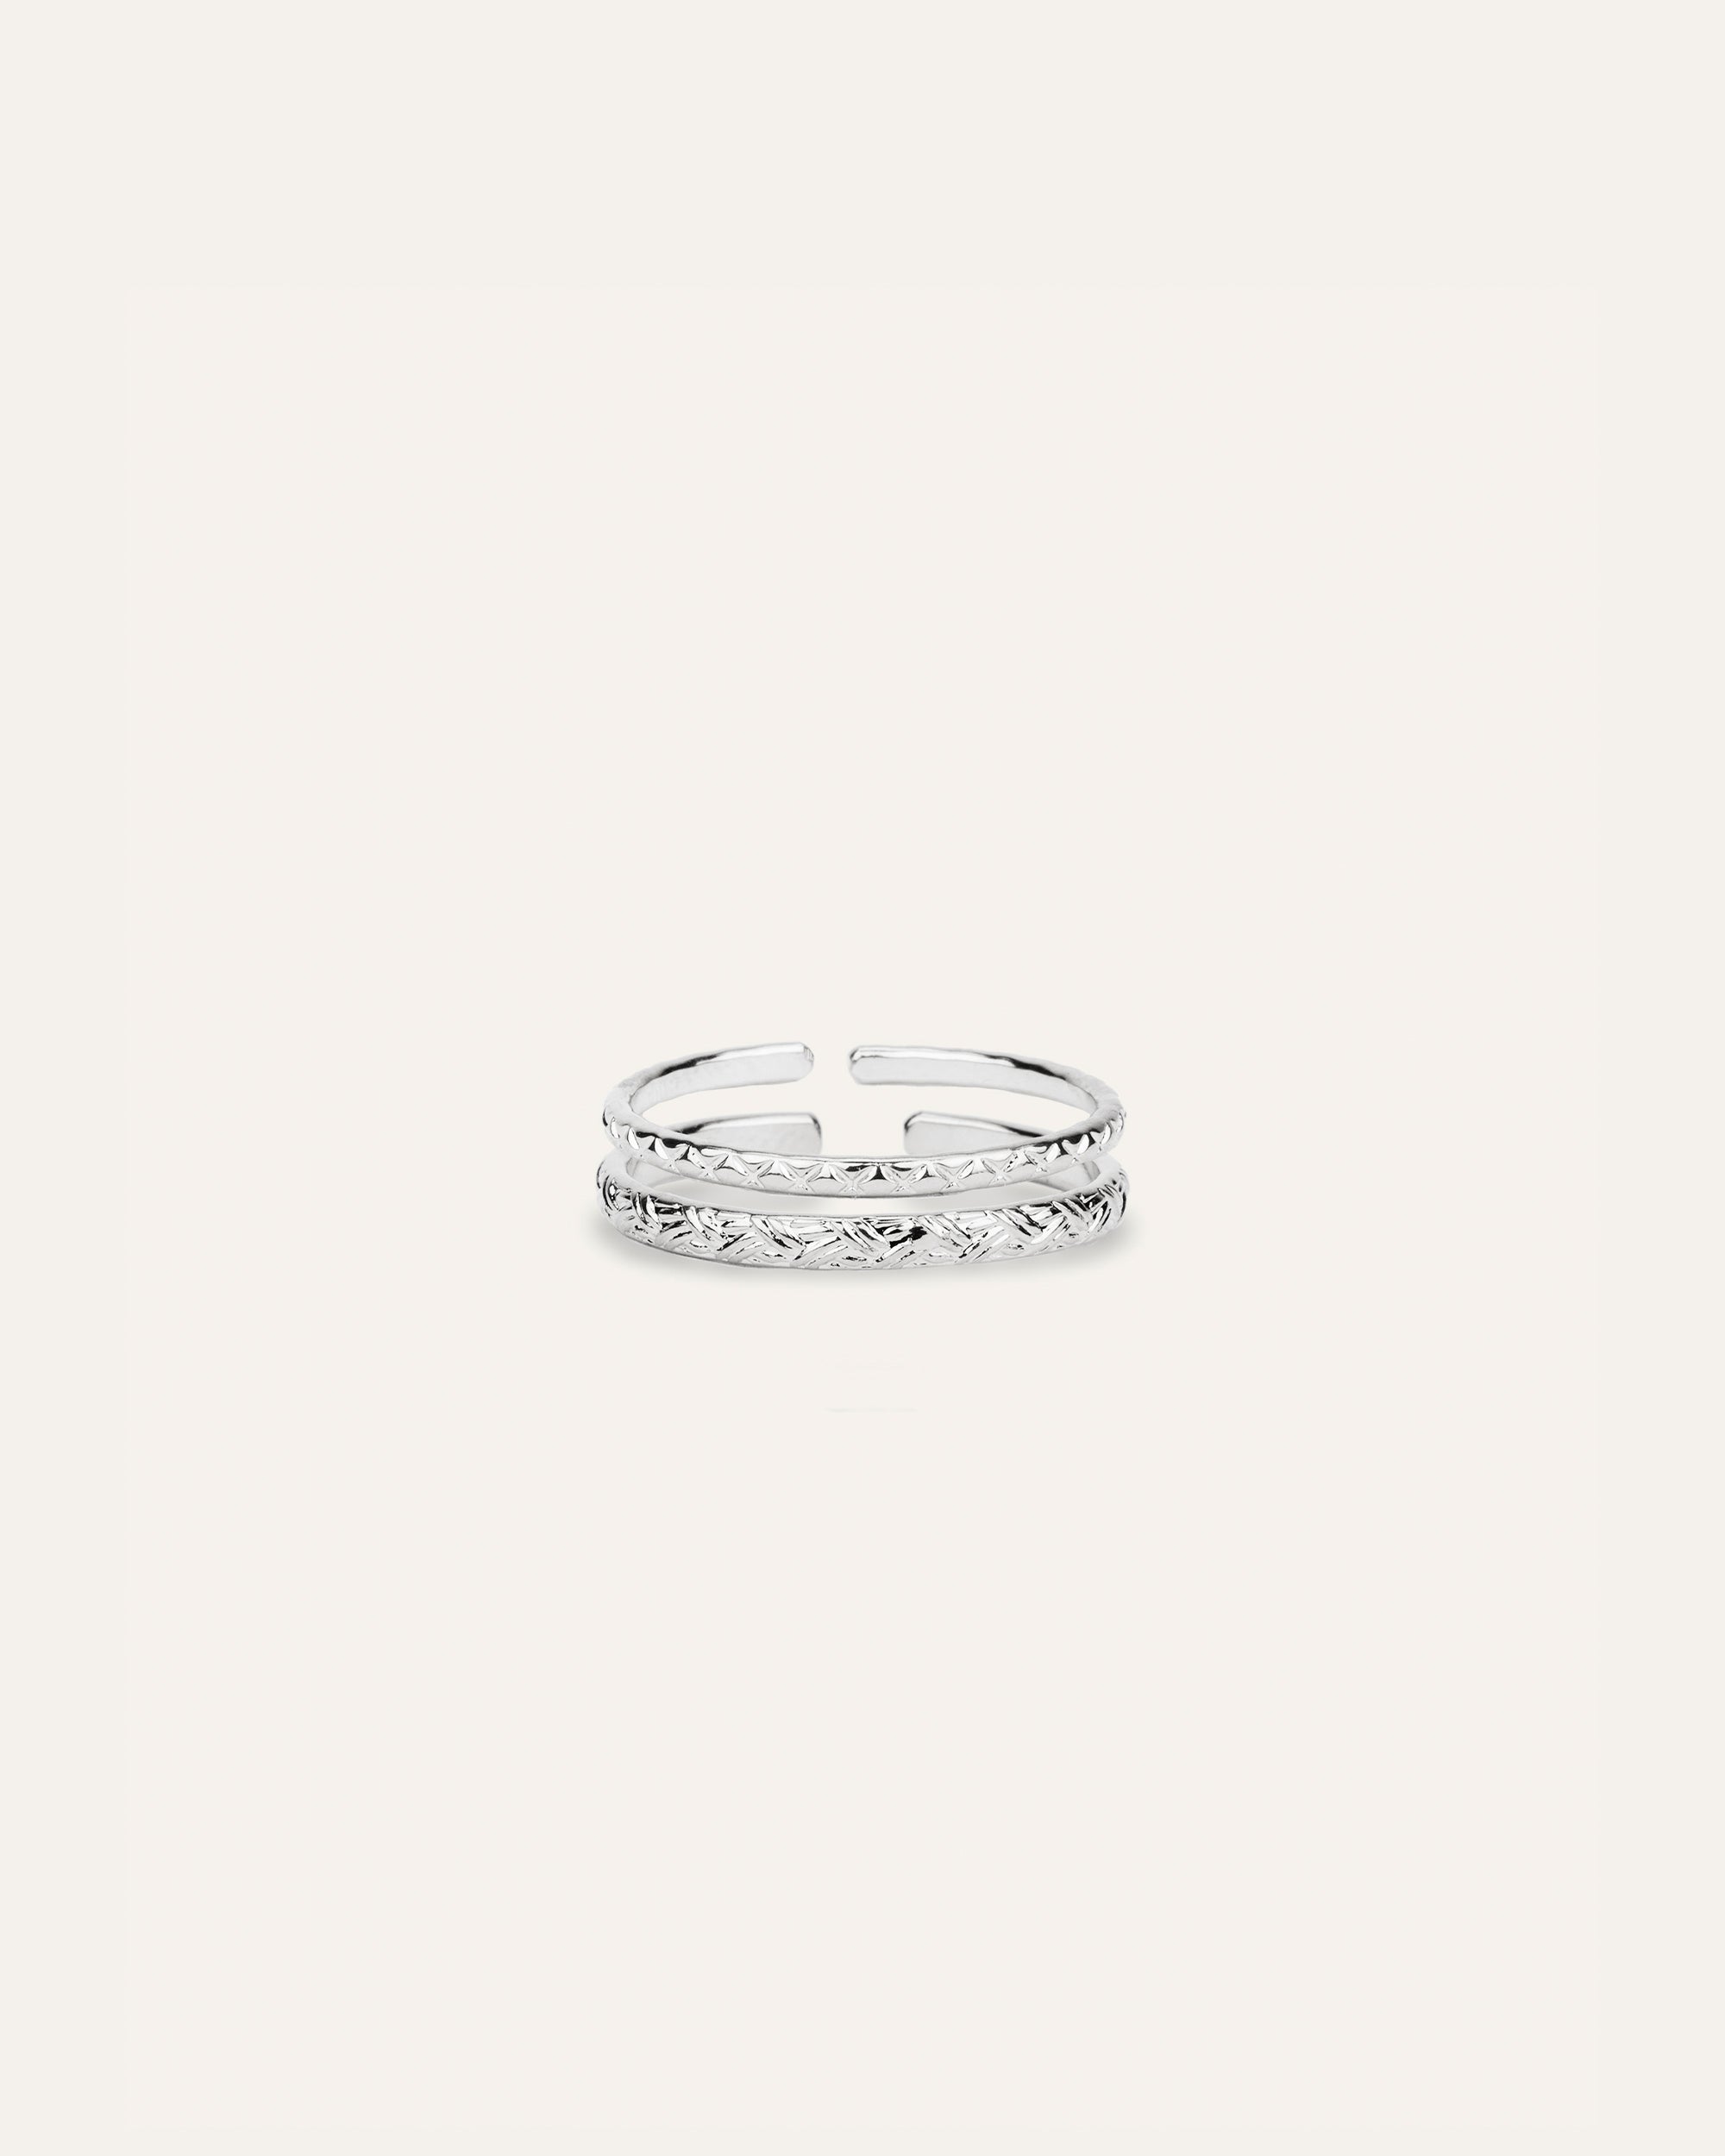 Nina silver ring